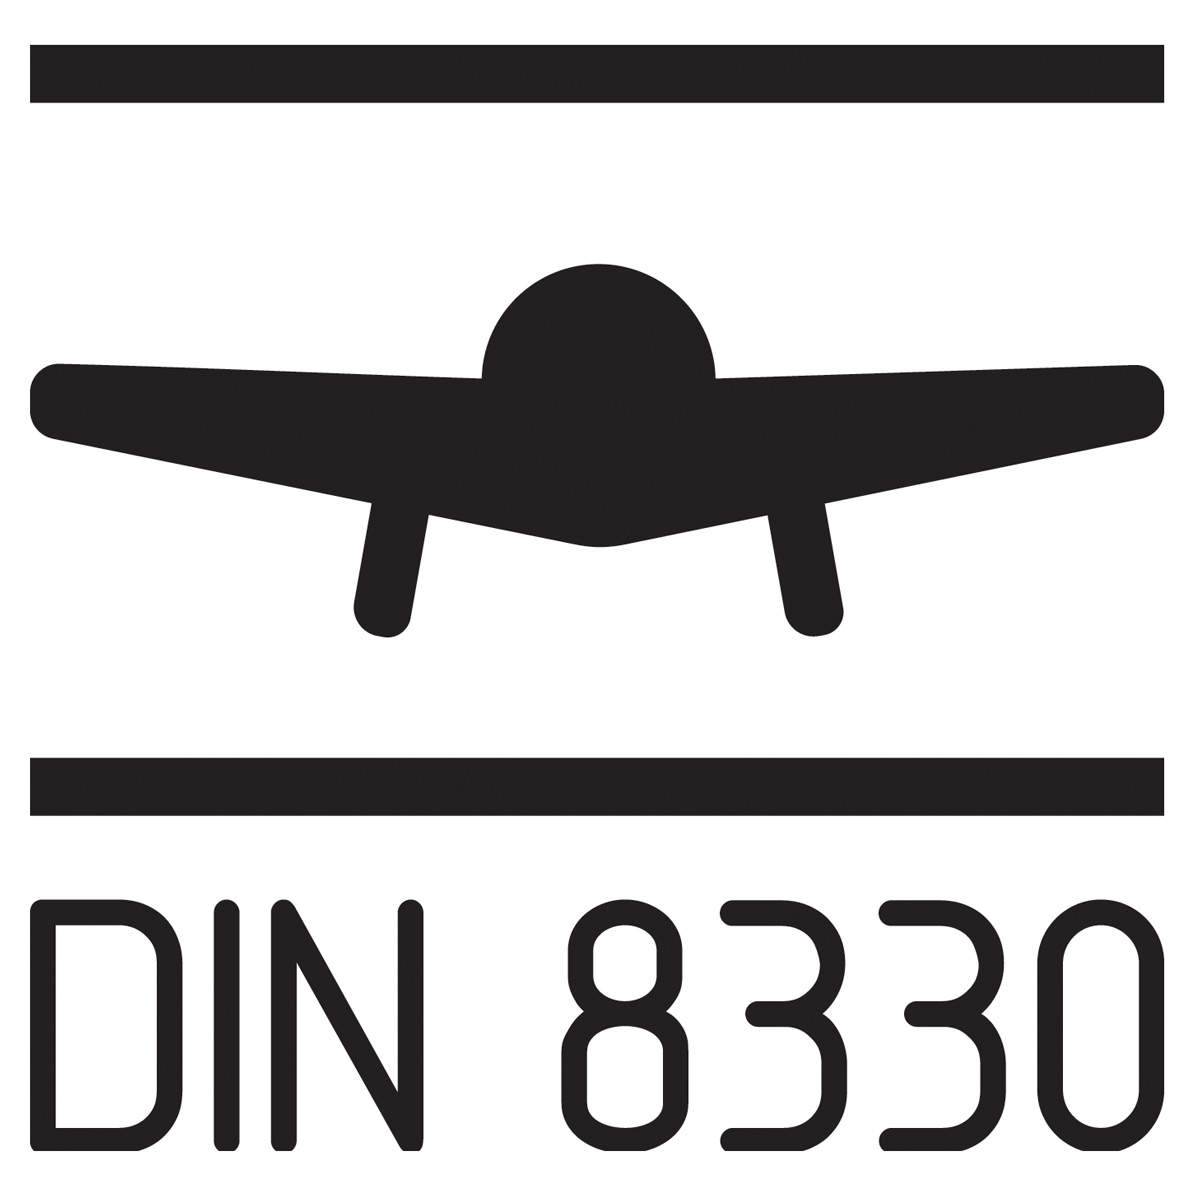 DINN8330